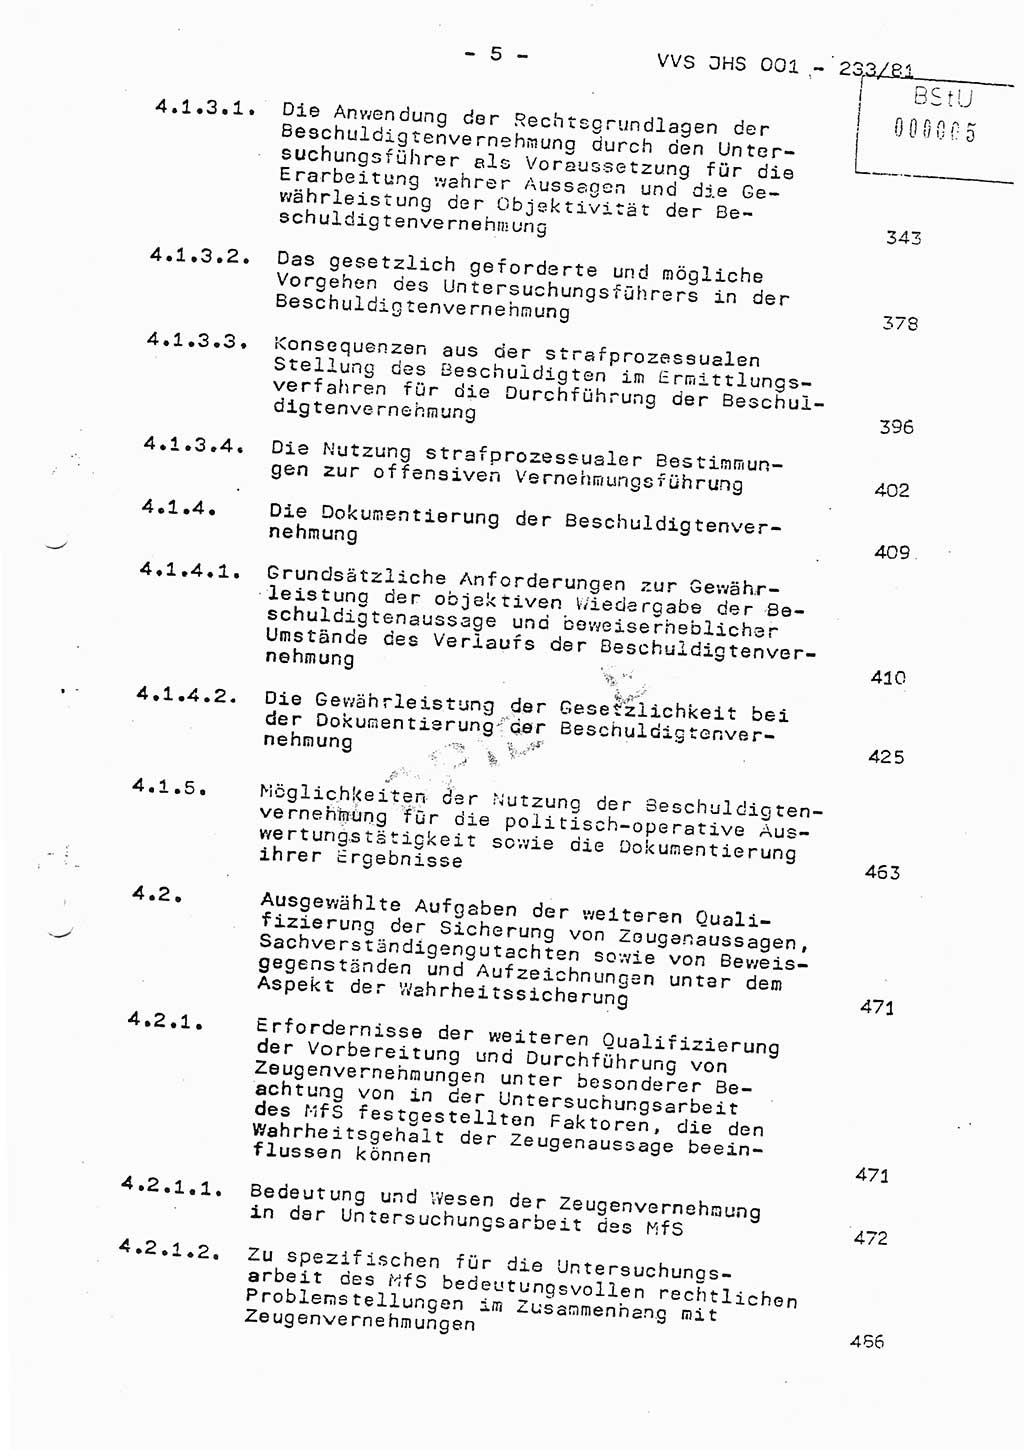 Dissertation Oberstleutnant Horst Zank (JHS), Oberstleutnant Dr. Karl-Heinz Knoblauch (JHS), Oberstleutnant Gustav-Adolf Kowalewski (HA Ⅸ), Oberstleutnant Wolfgang Plötner (HA Ⅸ), Ministerium für Staatssicherheit (MfS) [Deutsche Demokratische Republik (DDR)], Juristische Hochschule (JHS), Vertrauliche Verschlußsache (VVS) o001-233/81, Potsdam 1981, Blatt 5 (Diss. MfS DDR JHS VVS o001-233/81 1981, Bl. 5)